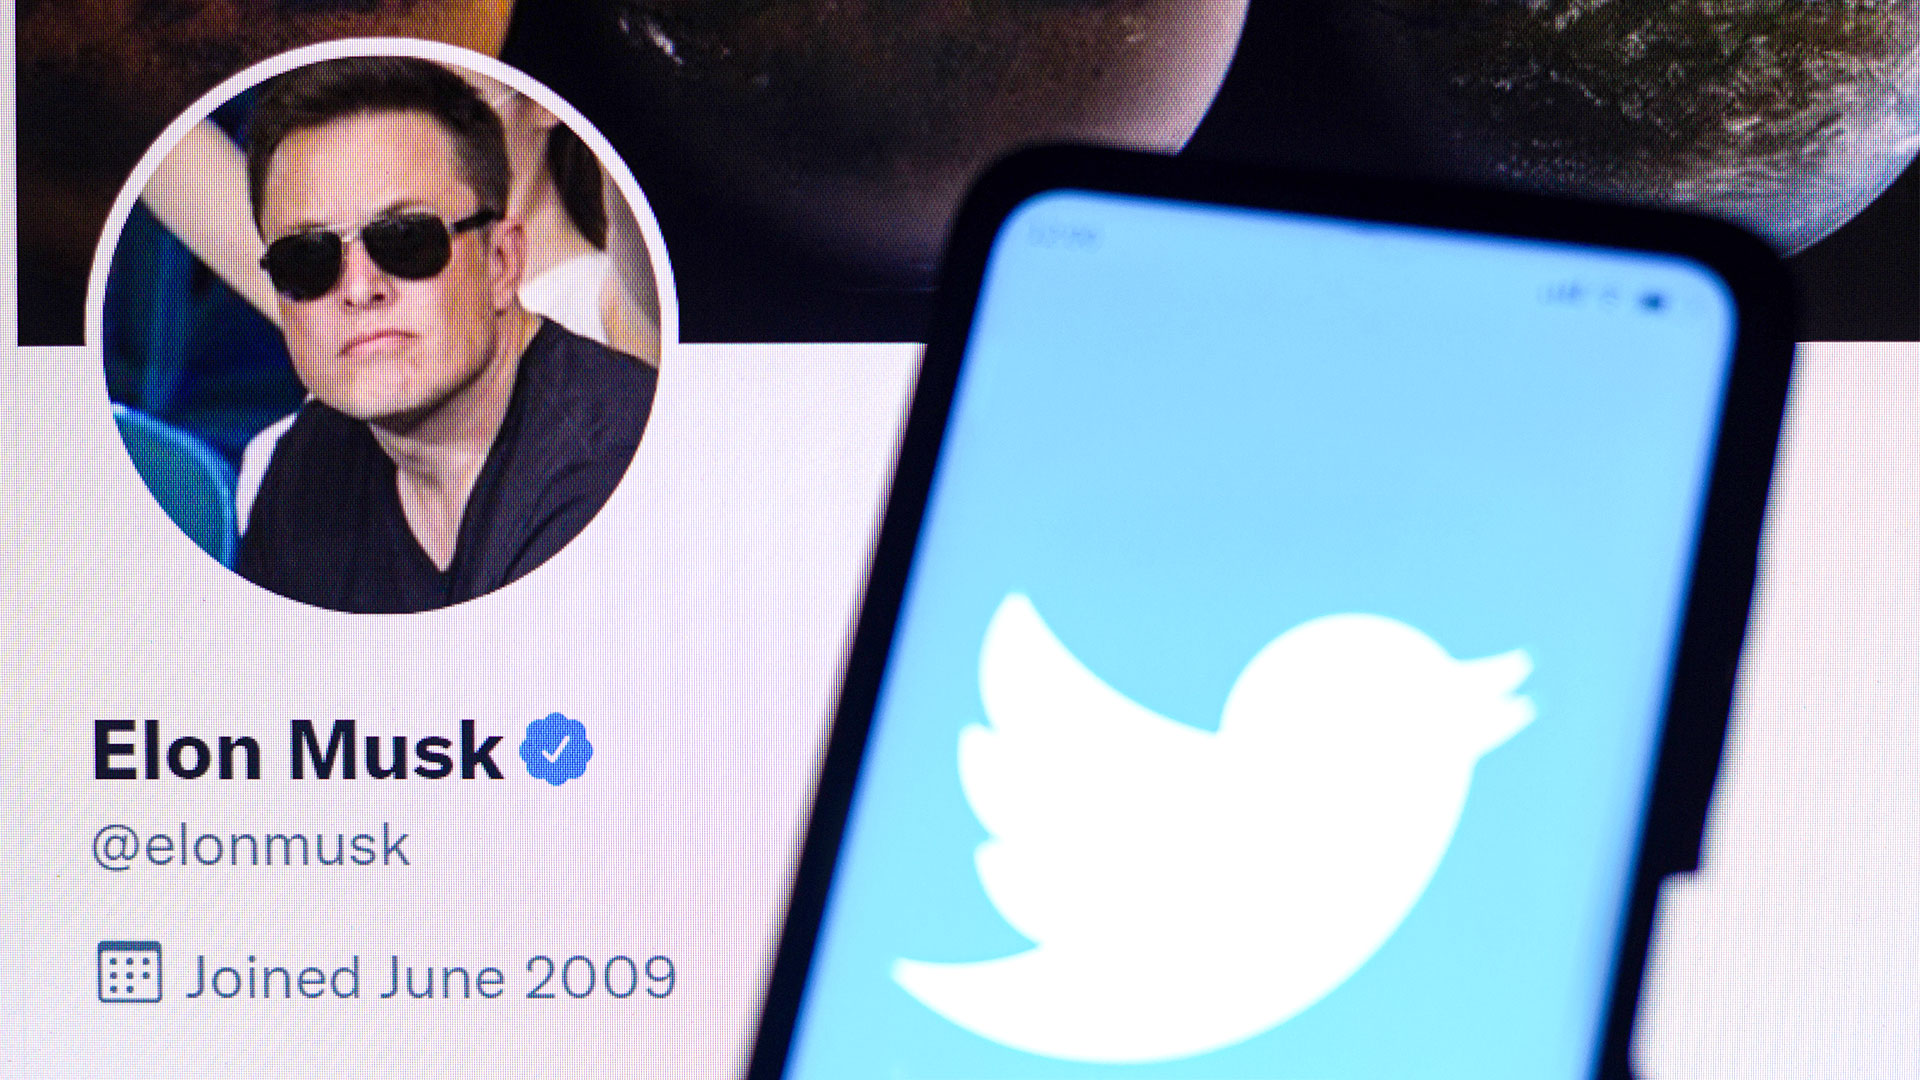 Das Twitter-Logo ist auf einem Smartphone zusammen mit dem offiziellen Twitter-Profil von Elon Musk zu sehen.